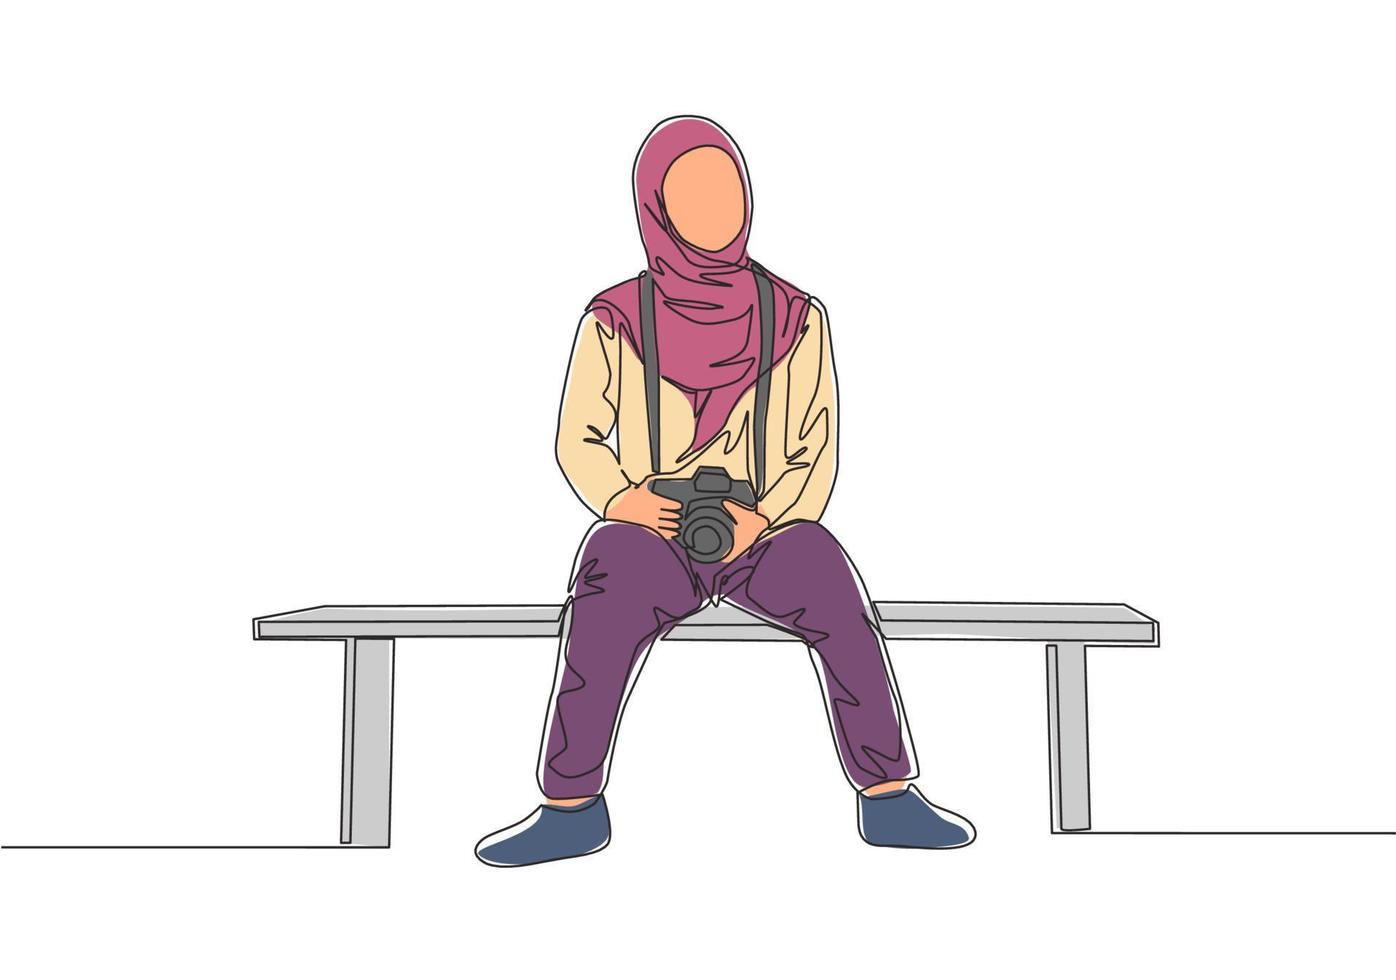 soltero continuo línea dibujo de joven linda muslimah sentado en silla mientras que lleva dslr cámara. hermosa asiático mujer modelo en de moda hijab Moda concepto uno línea dibujar diseño vector ilustración